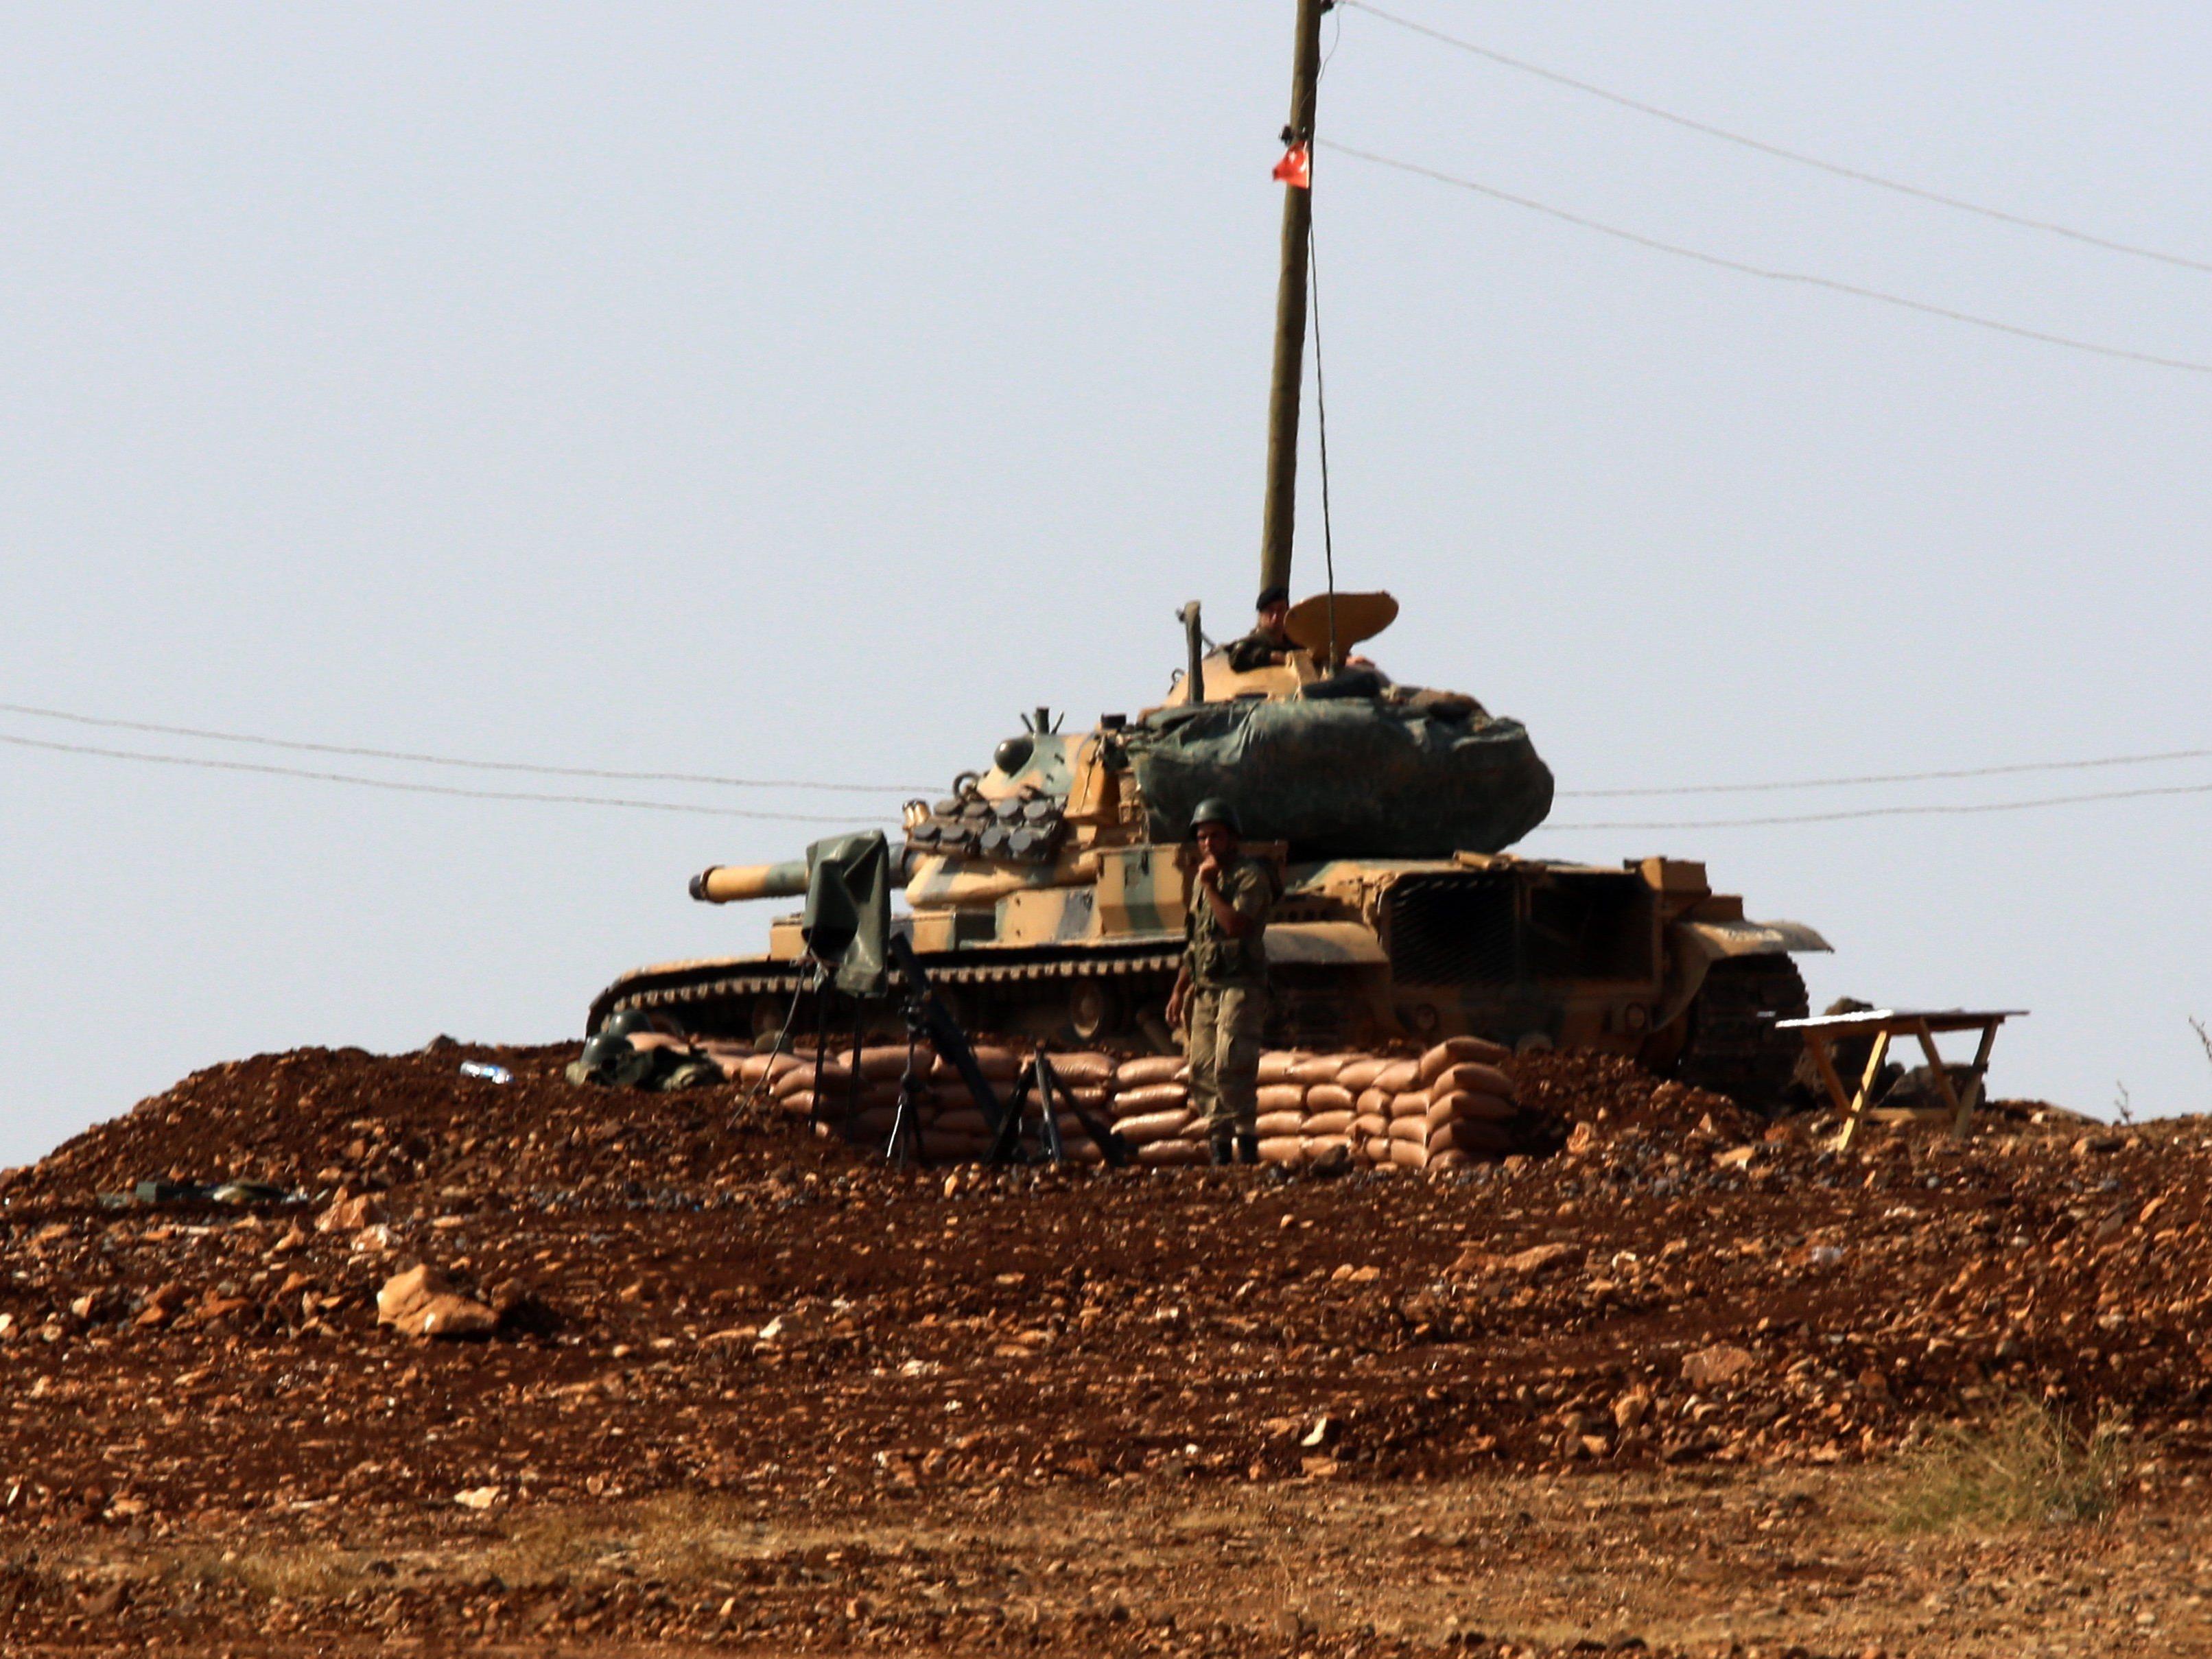 Bislang stehen die türkischen Panzer an der Grenze zu Syrien und dem Irak. Das könnte sich nun ändern.